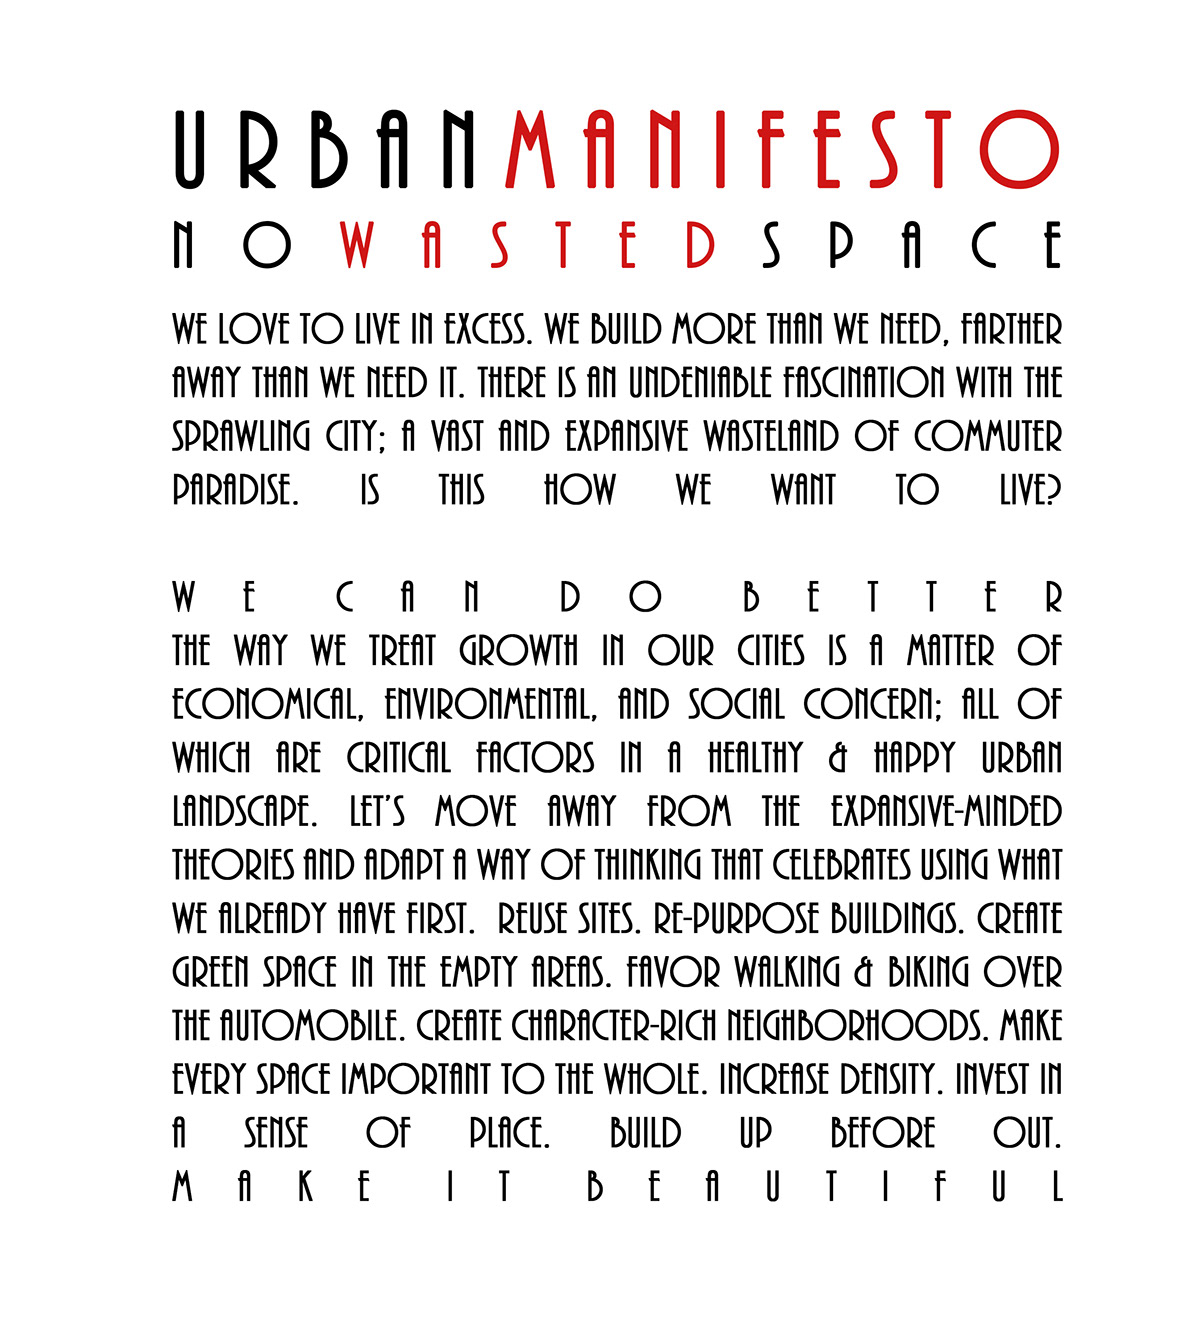 Urban design manifesto waste Space 